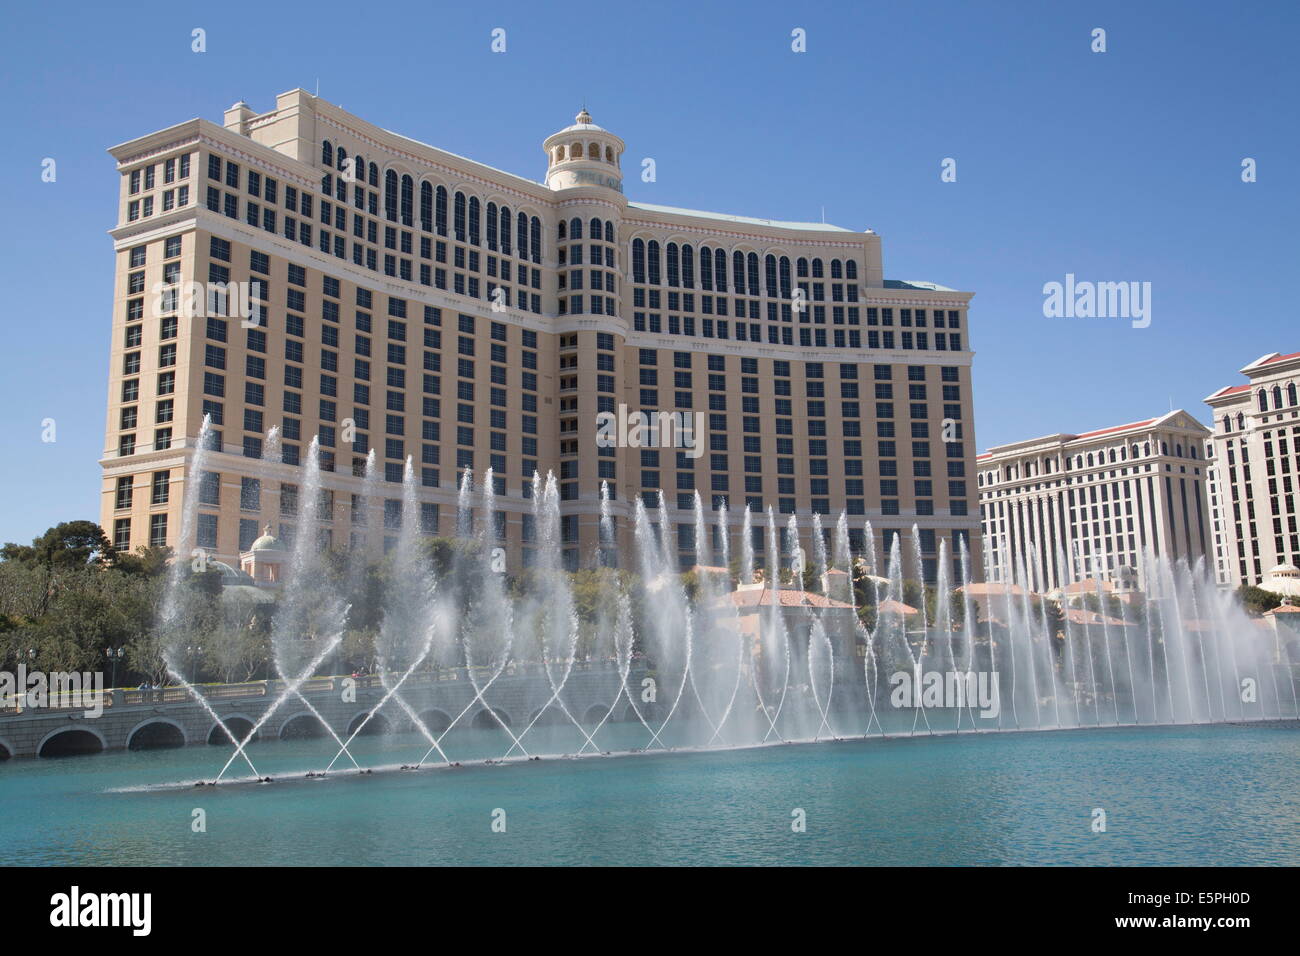 Fontana visualizza, Bellagio Hotel Las Vegas, Nevada, Stati Uniti d'America, America del Nord Foto Stock